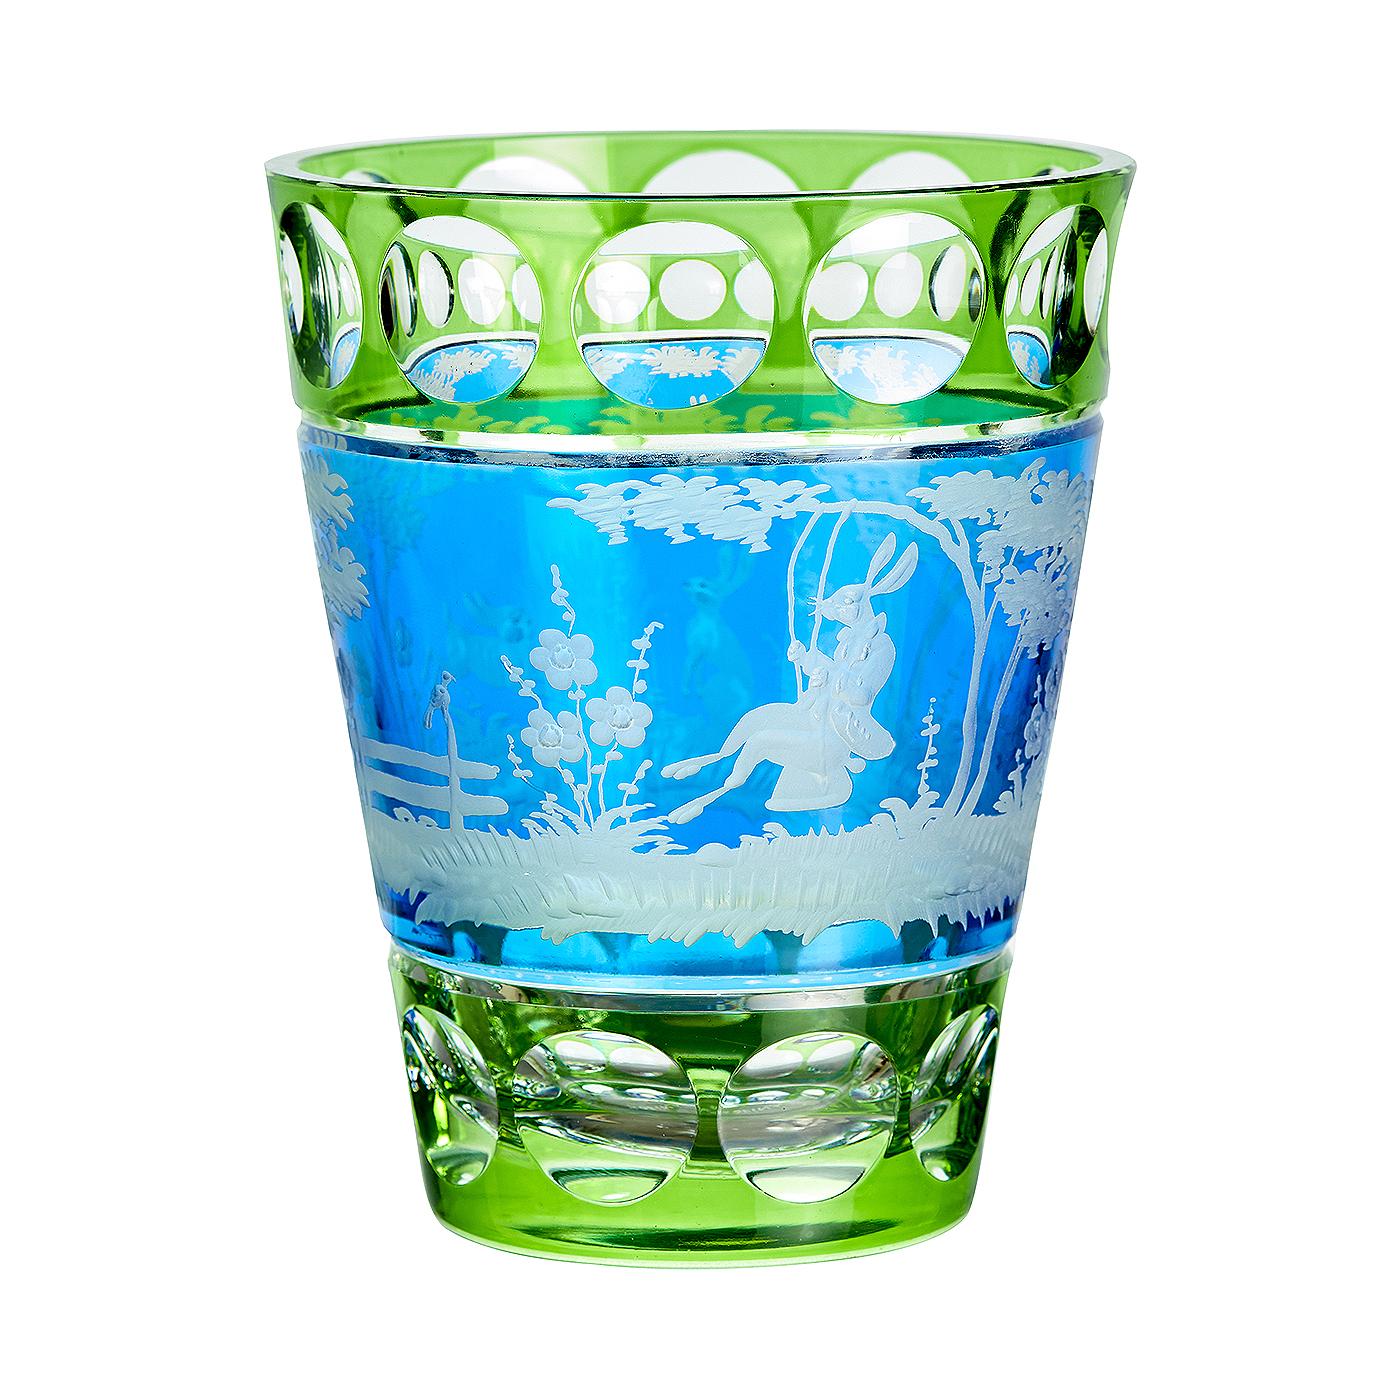 Vase aus mundgeblasenem Kristall in grünem und blauem Glas mit einer Szene aus dem Orient. Das Dekor ist ein Osterdekor mit 2 freihändig gravierten Hasen im naturalistischen Stil. Vollständig mundgeblasen und handgraviert in Bayern/Deutschland. Das